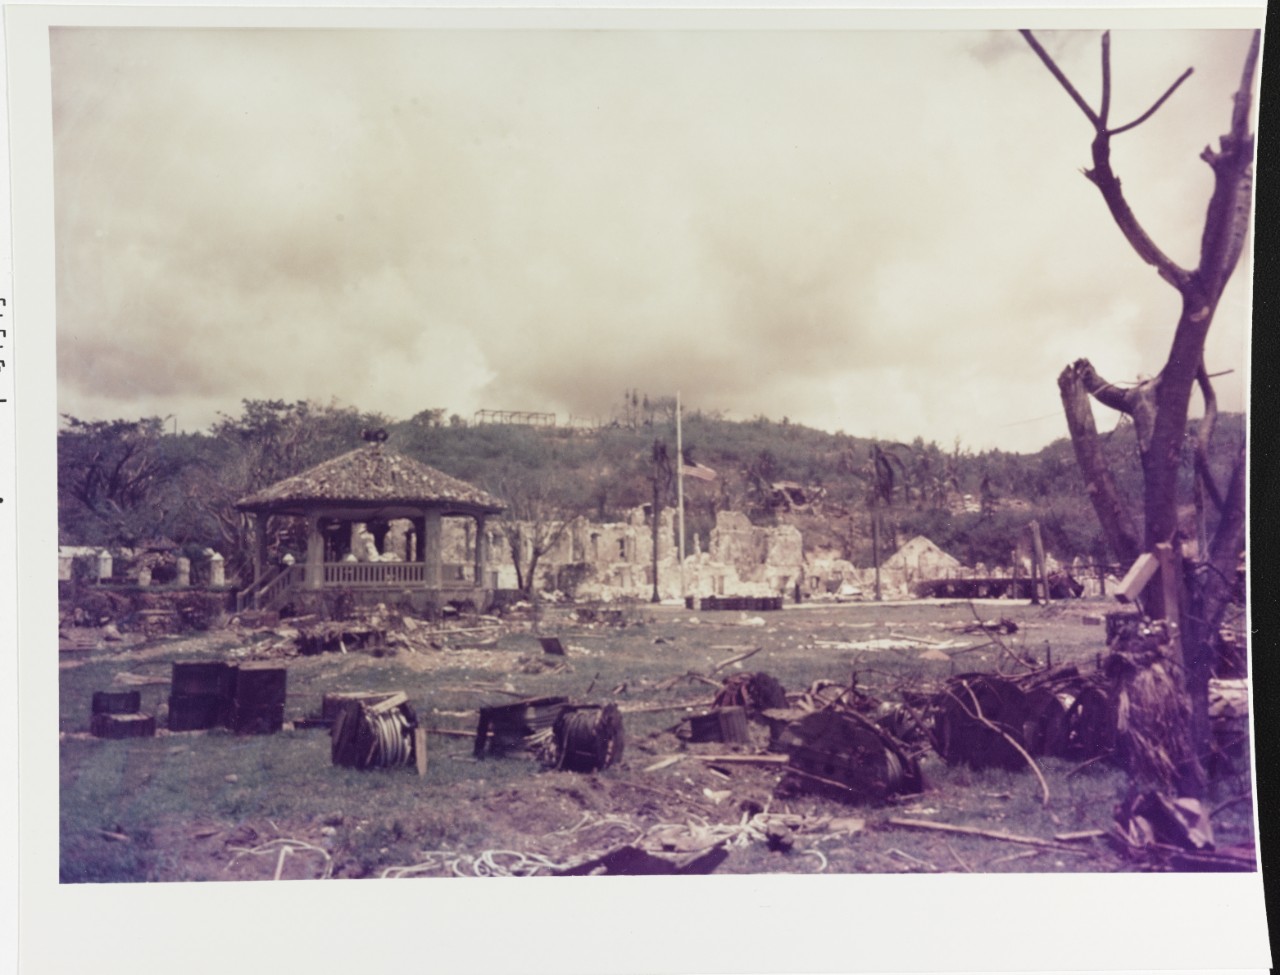 Agana, Guam, August 2, 1944